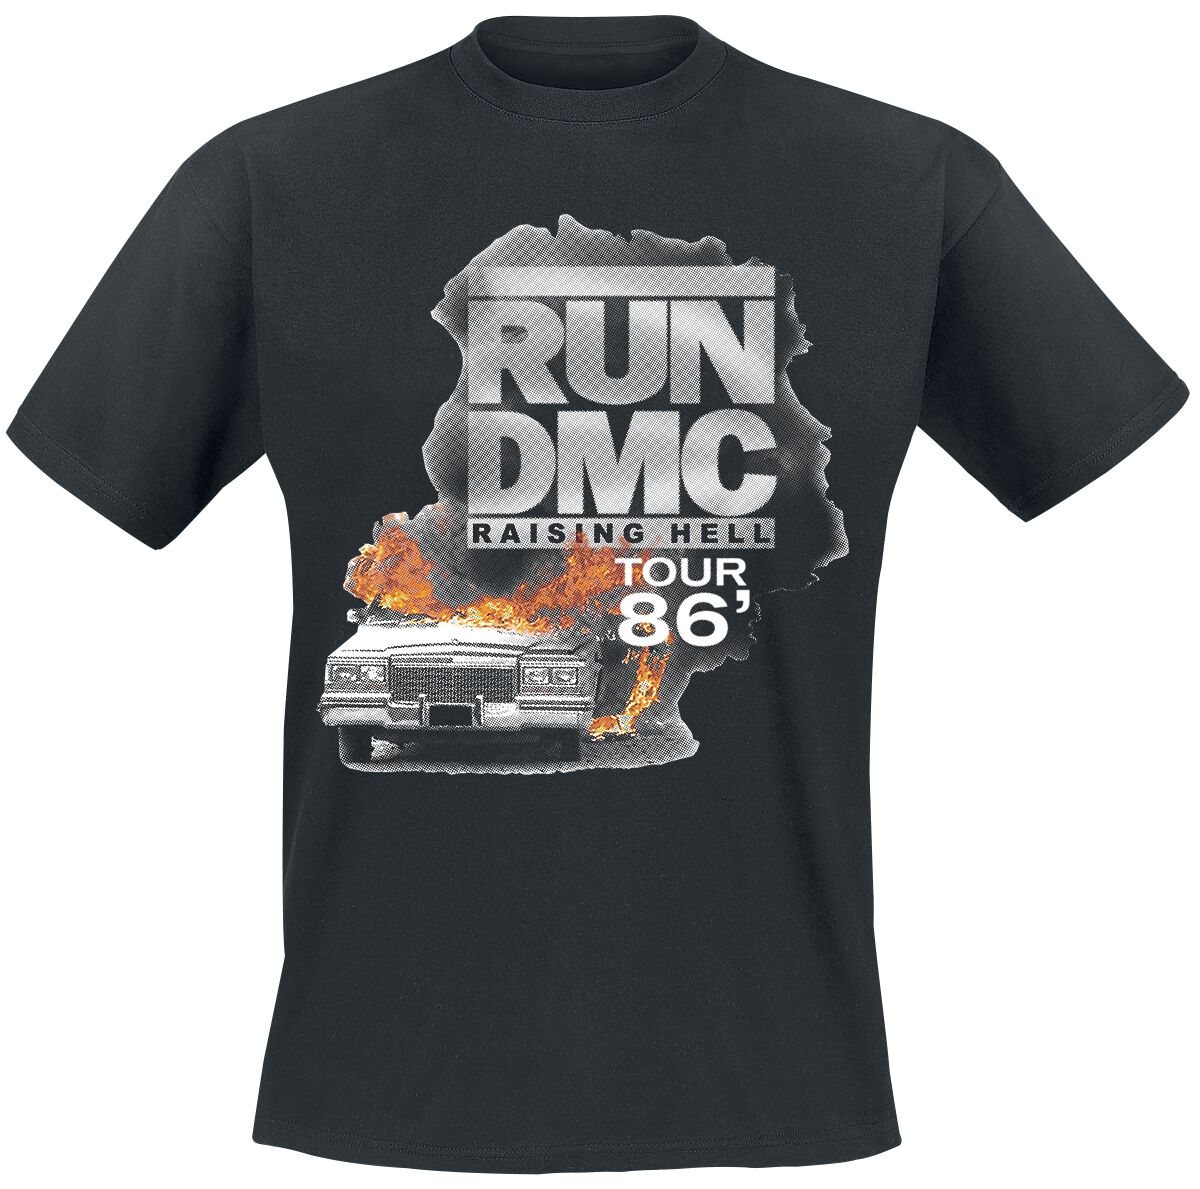 Run DMC T-Shirt - Burning Cadillac Tour 86 - S bis L - für Männer - Größe S - schwarz  - Lizenziertes Merchandise!